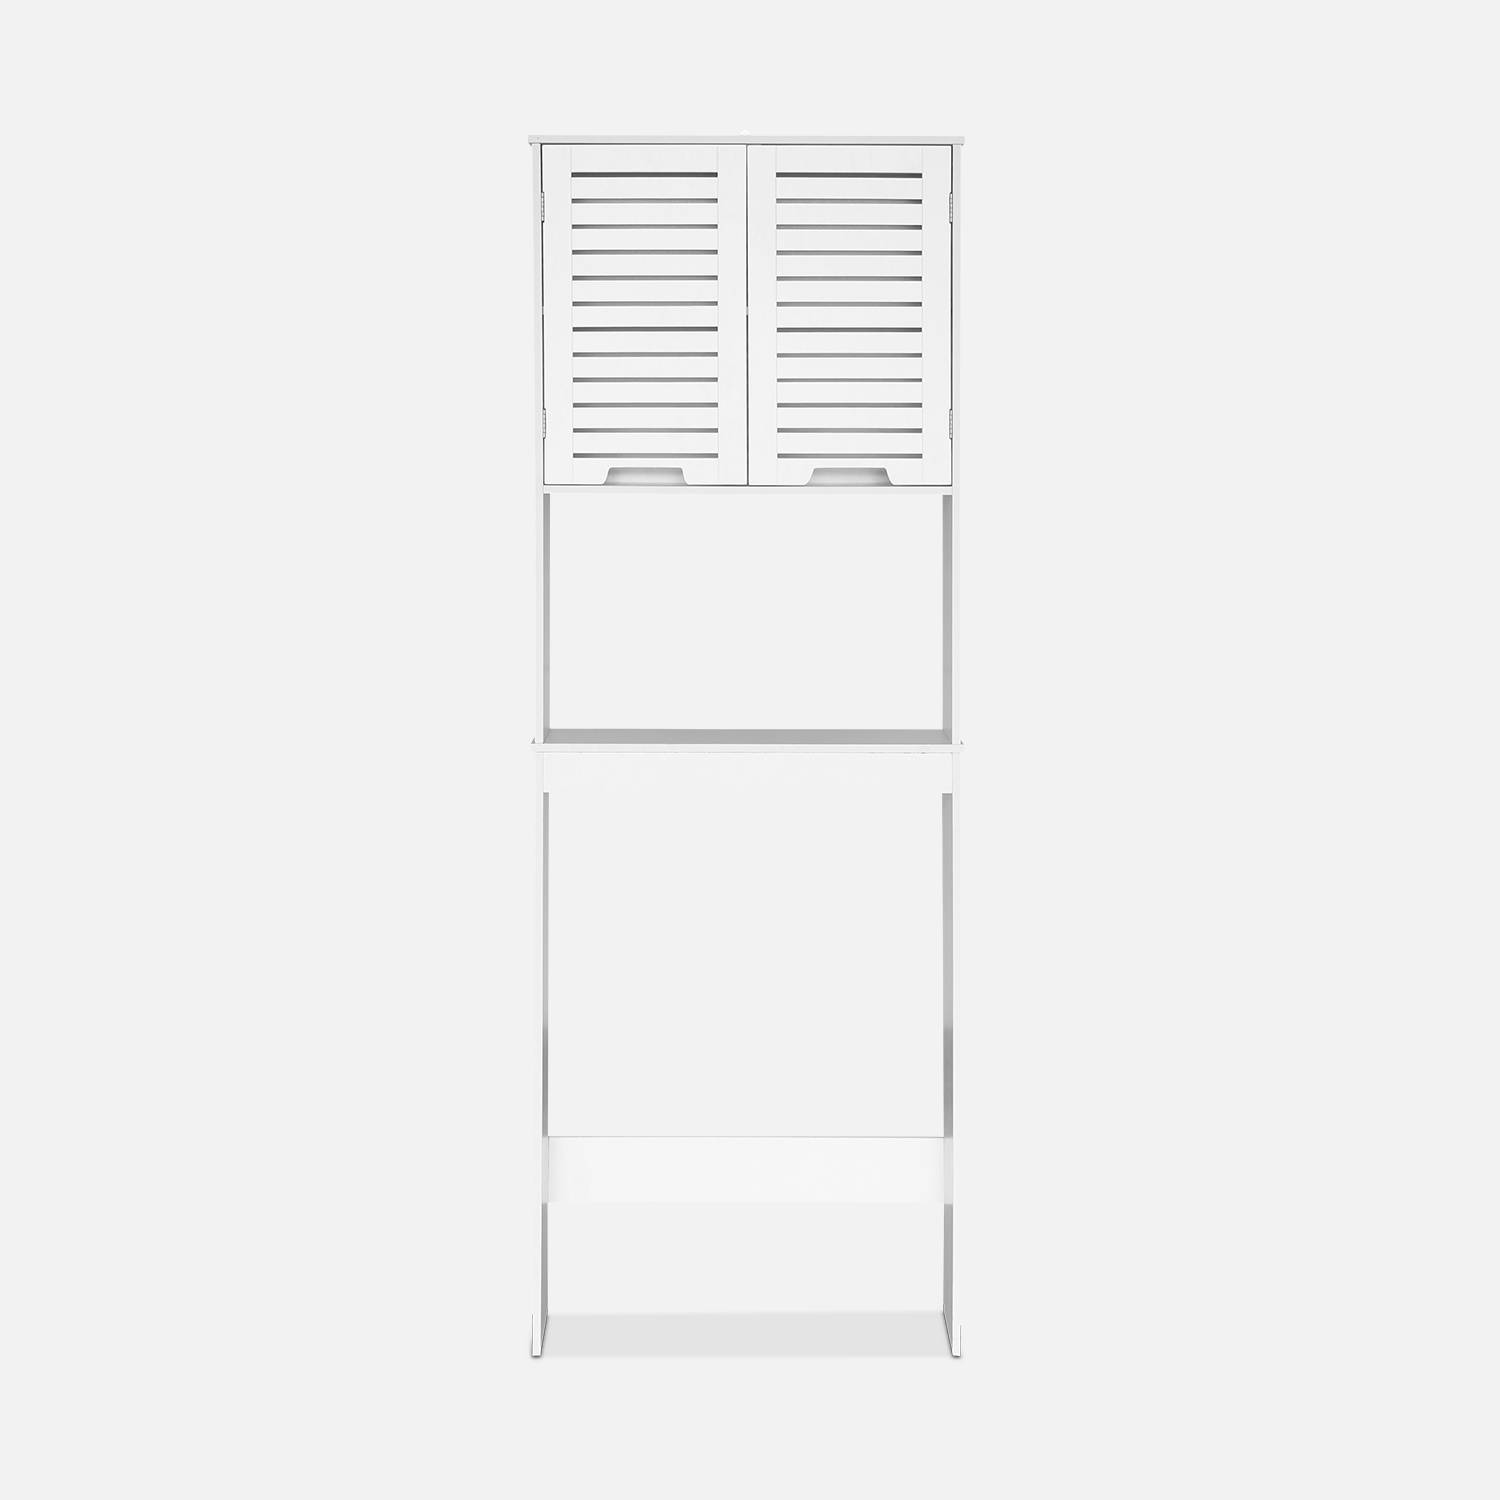 WC shelf/cabinet, bathroom furniture, white,sweeek,Photo3